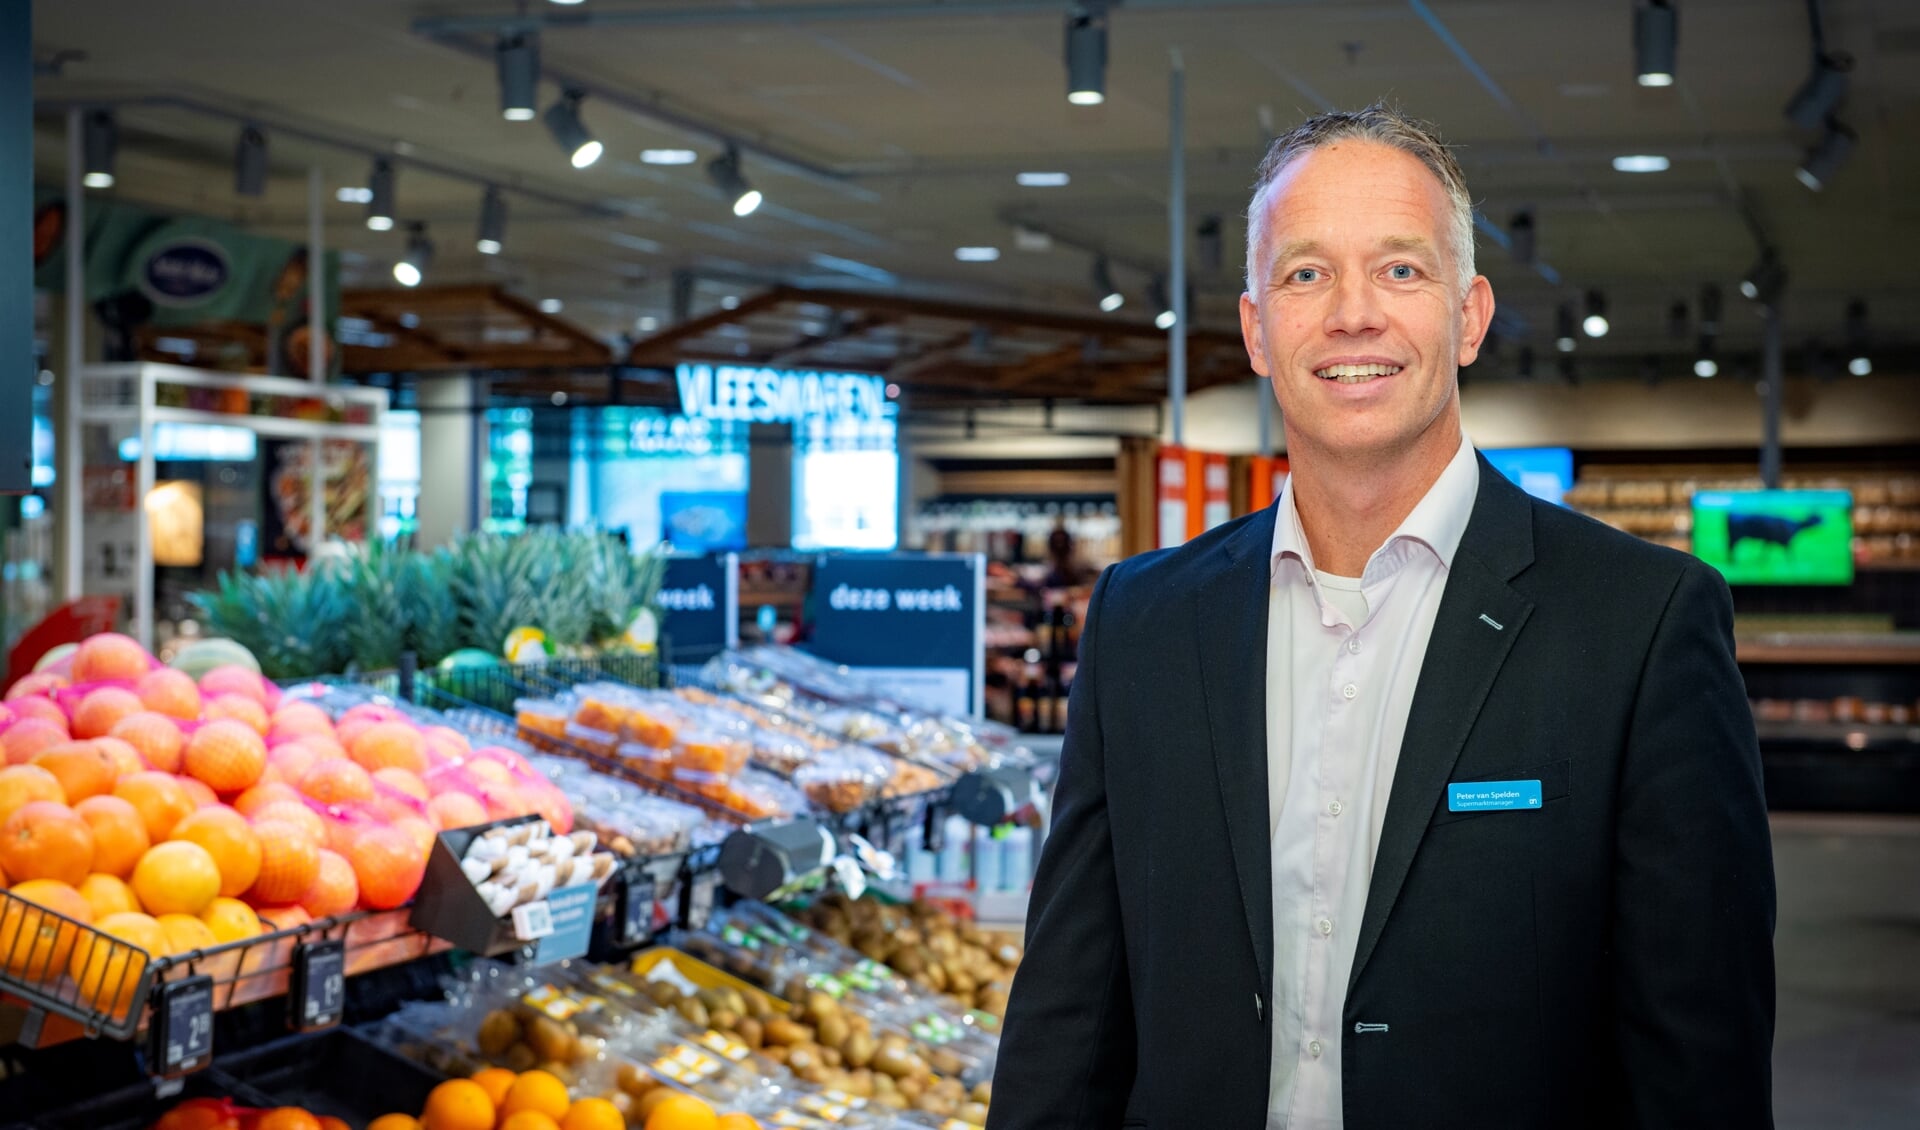 “Je weet straks niet wat je ziet", zegt supermarktmanager Peter van Spelden. 